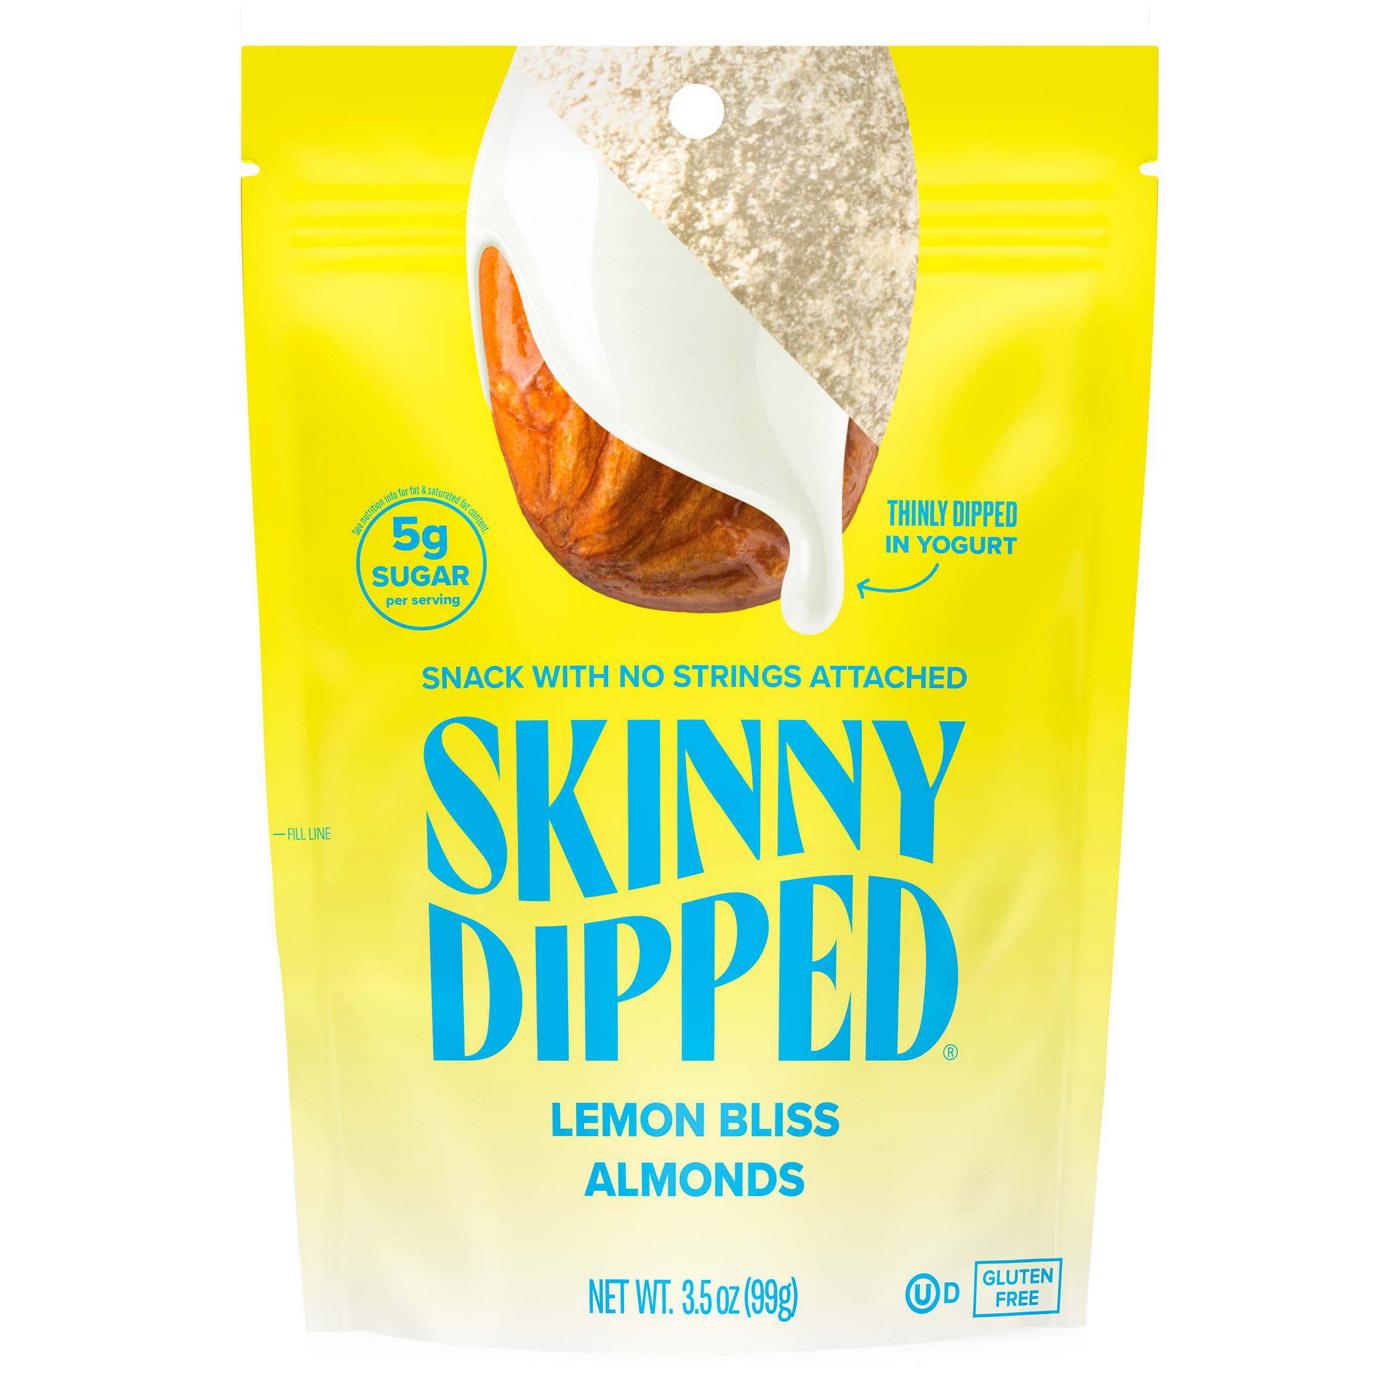 SkinnyDipped Lemon Bliss Almonds; image 1 of 2